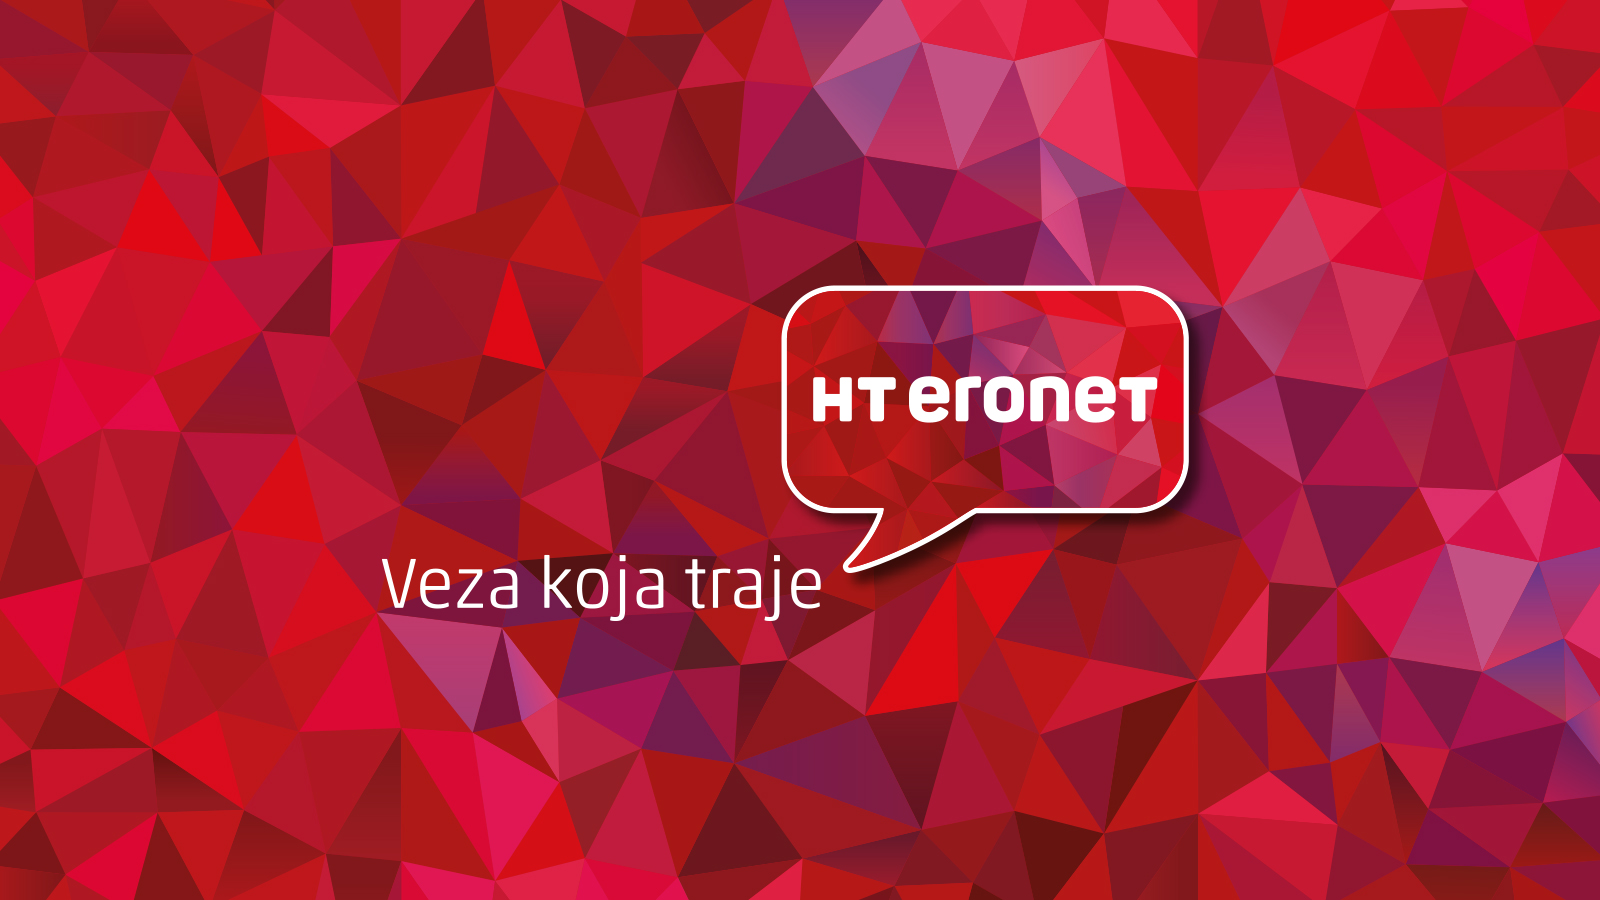 www.hteronet.ba